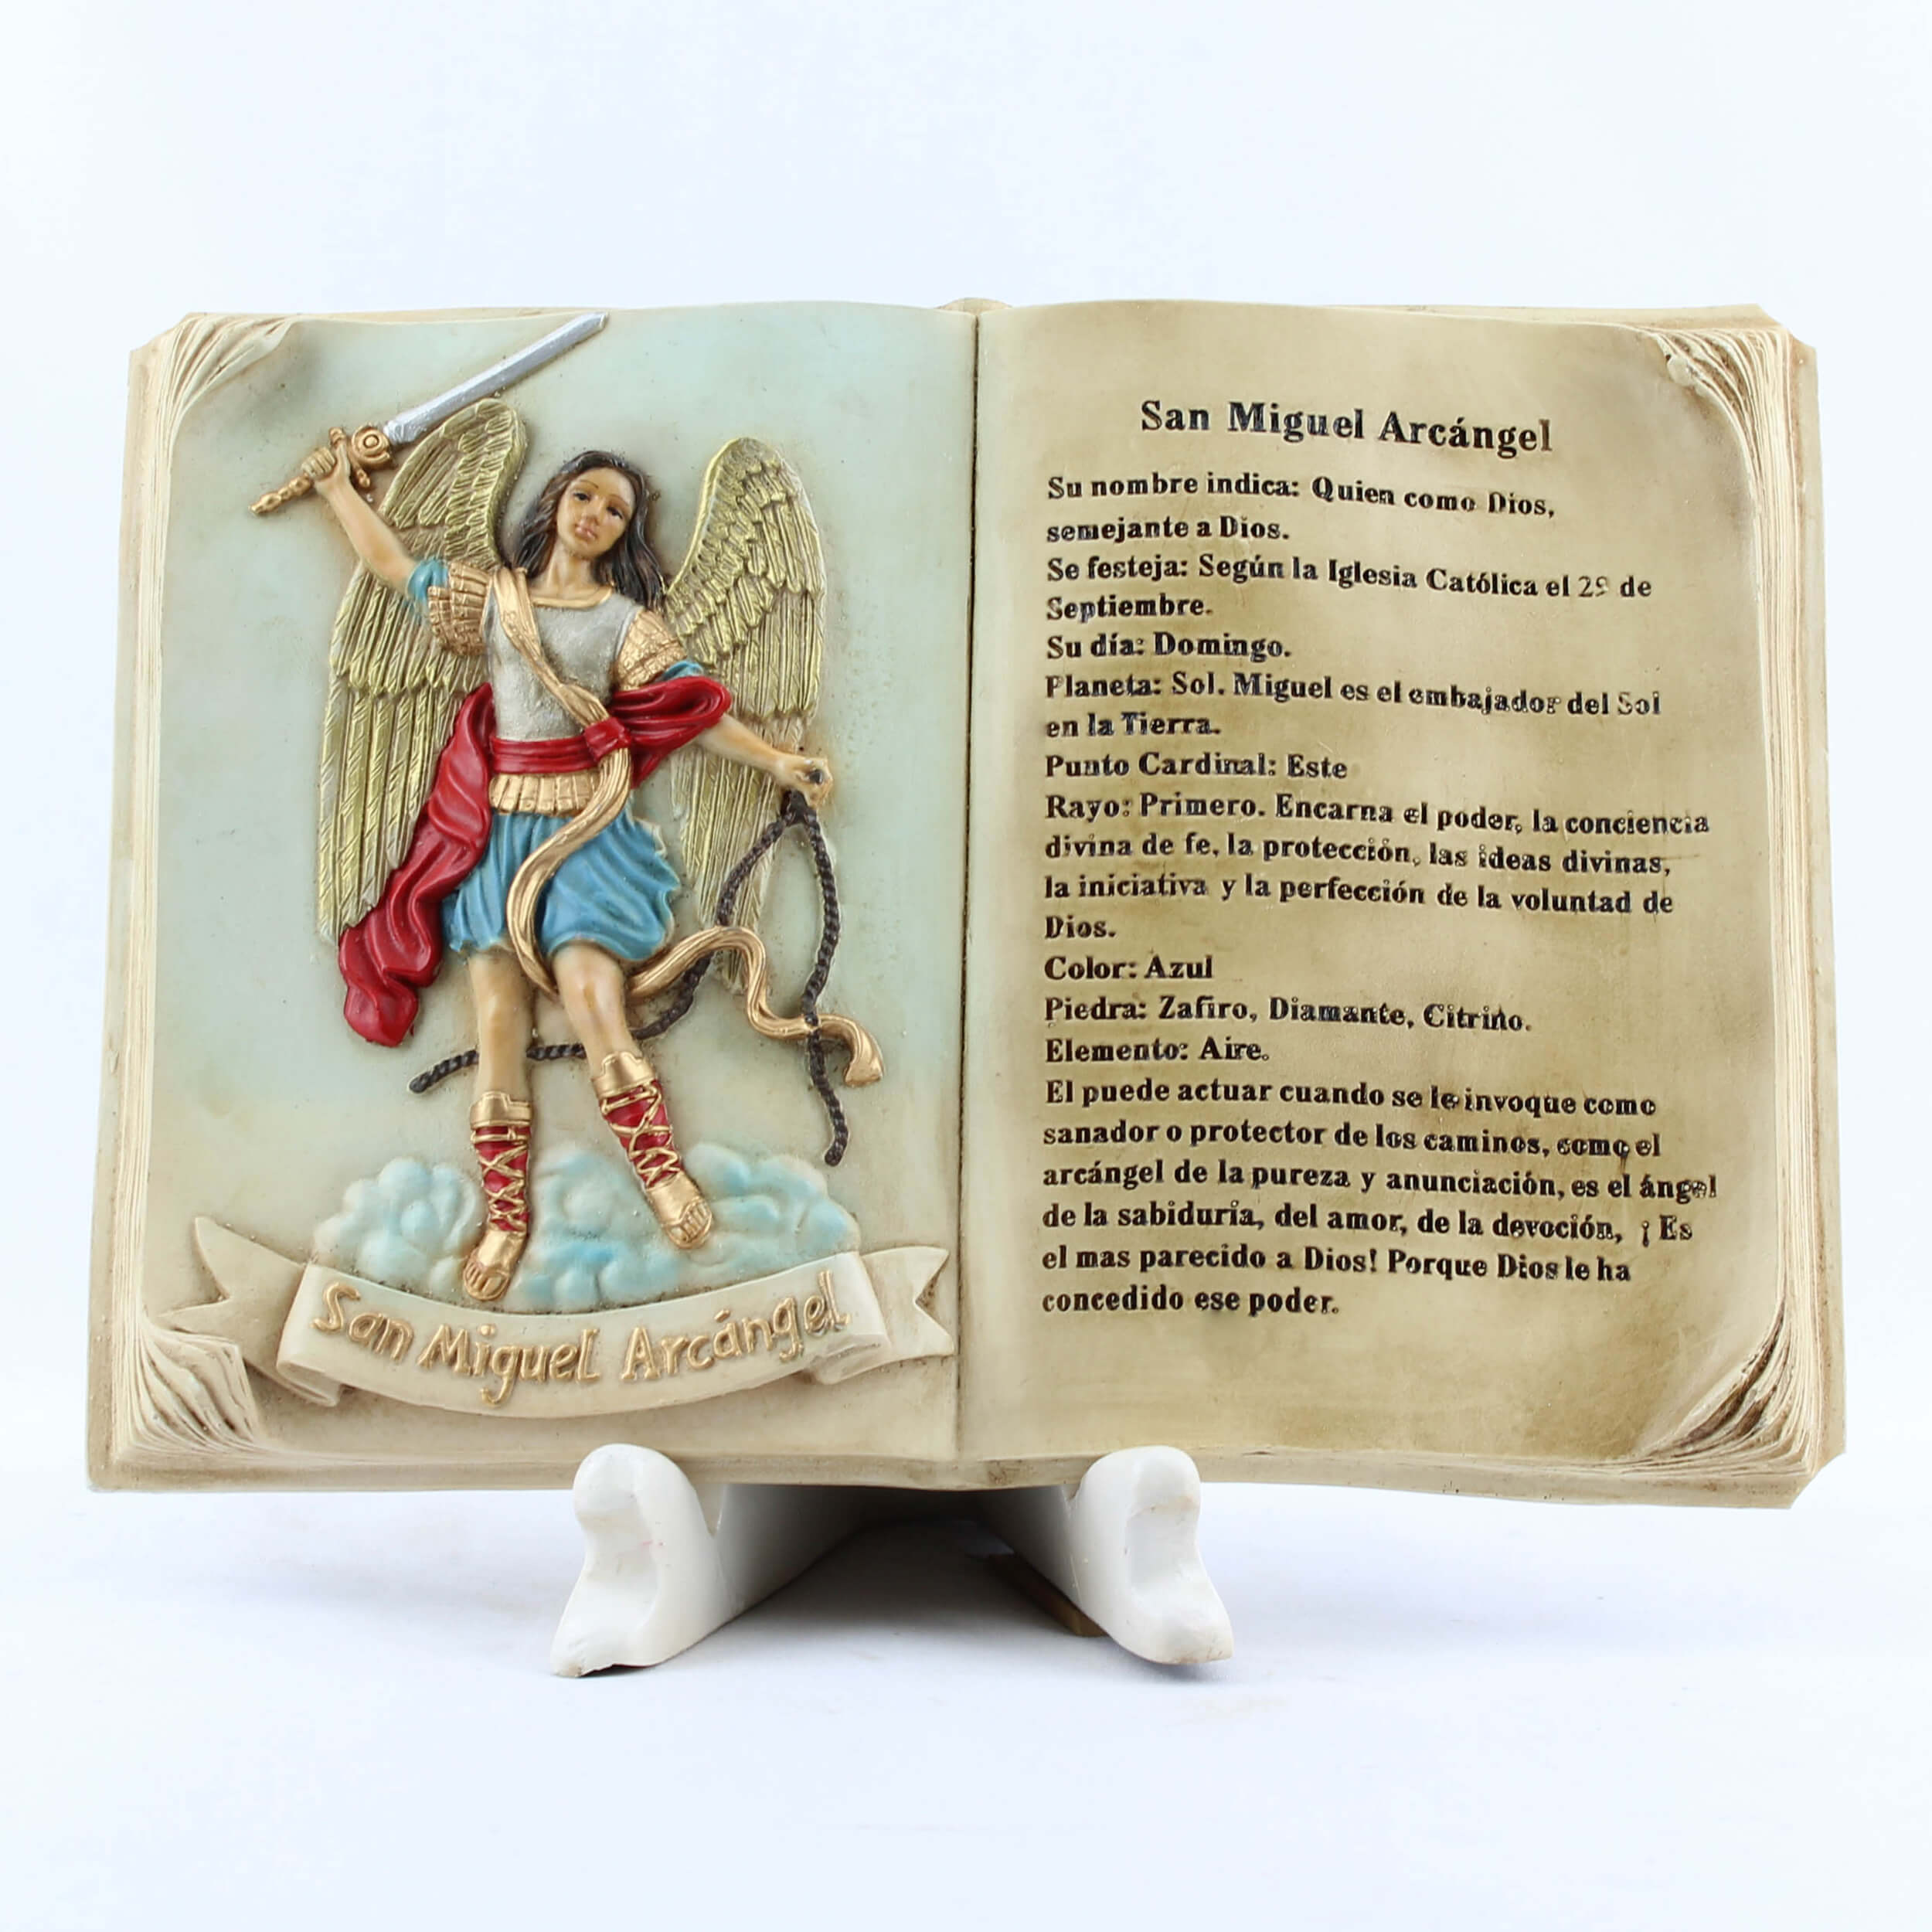 Devocionario a San Miguel Arcangel - Libro en Tapa Delgada-D